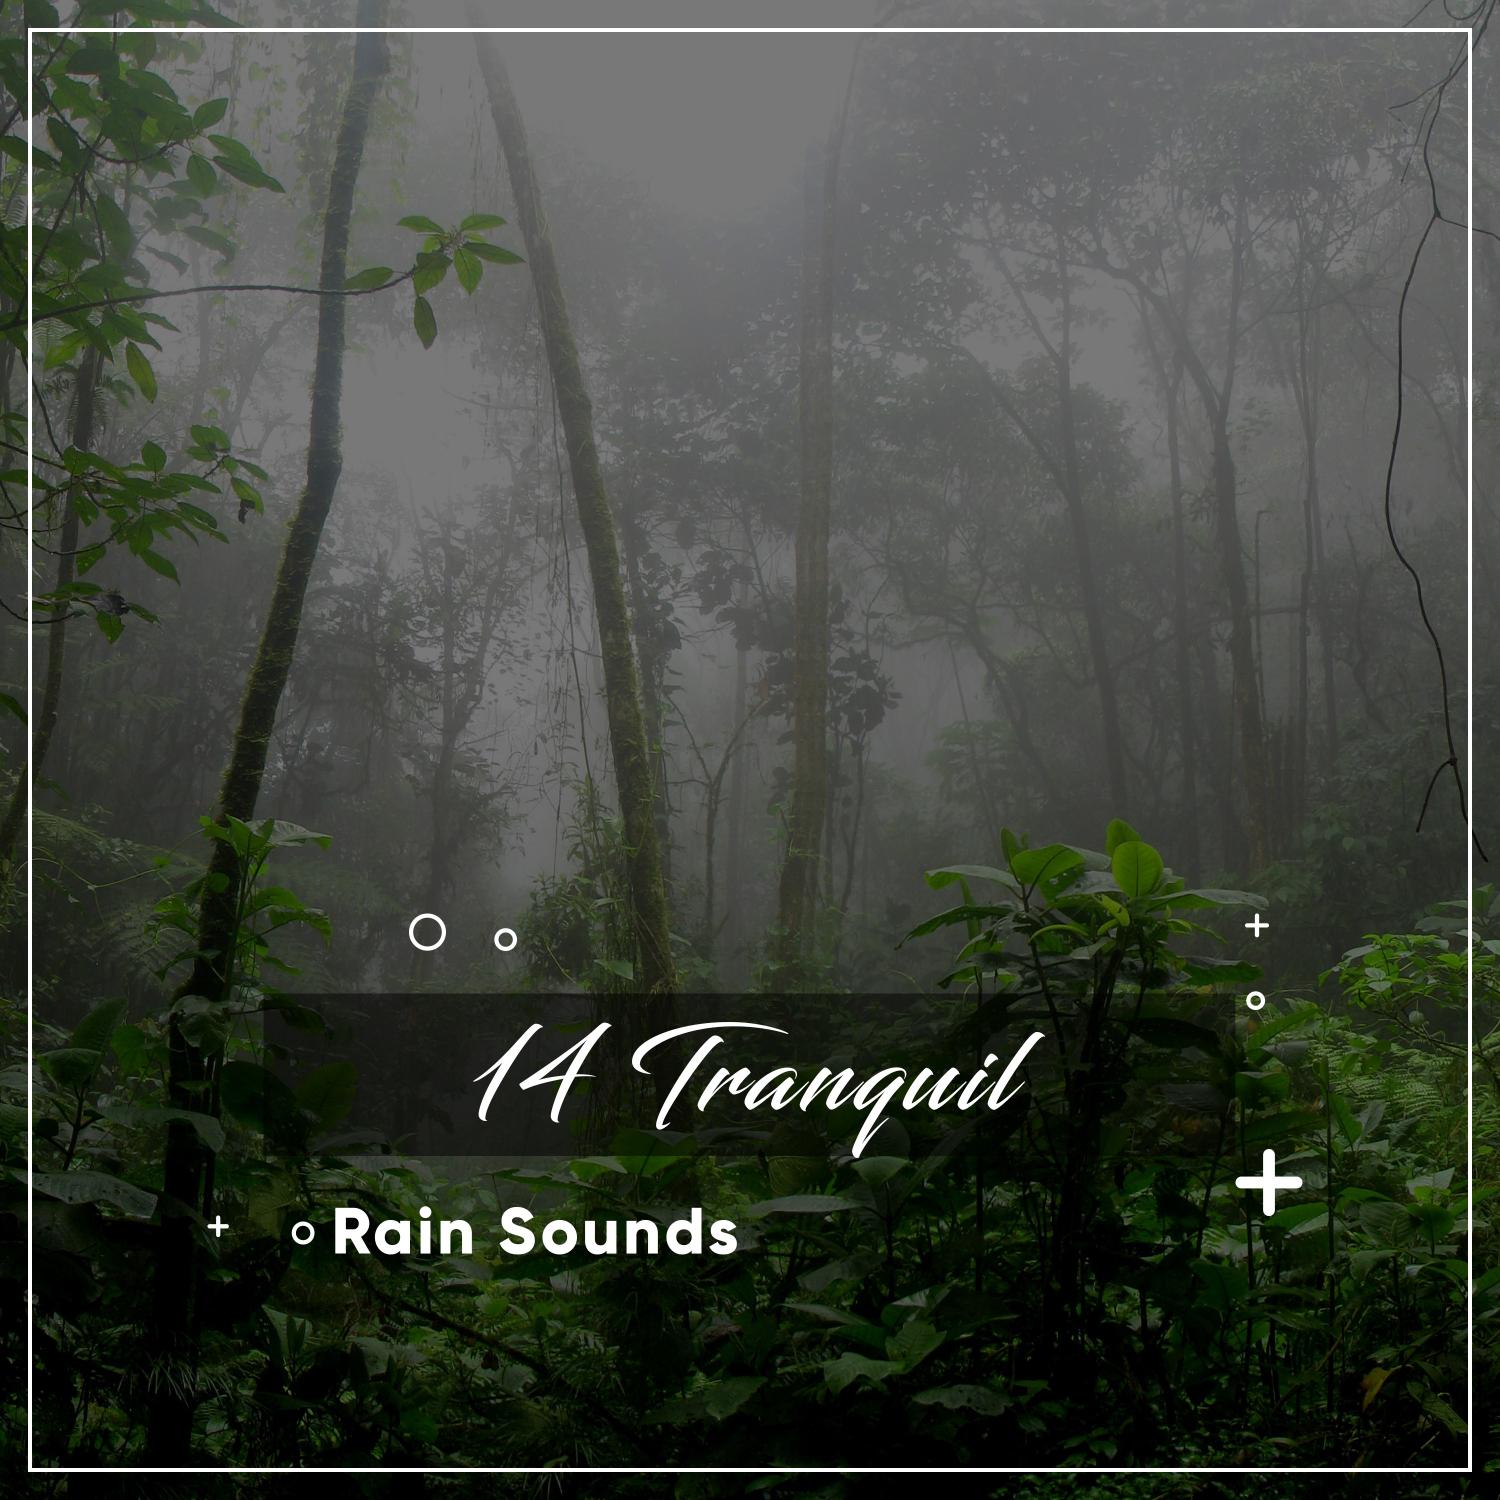 14 Tranquil Rain Sounds to Drift Off & Sleep